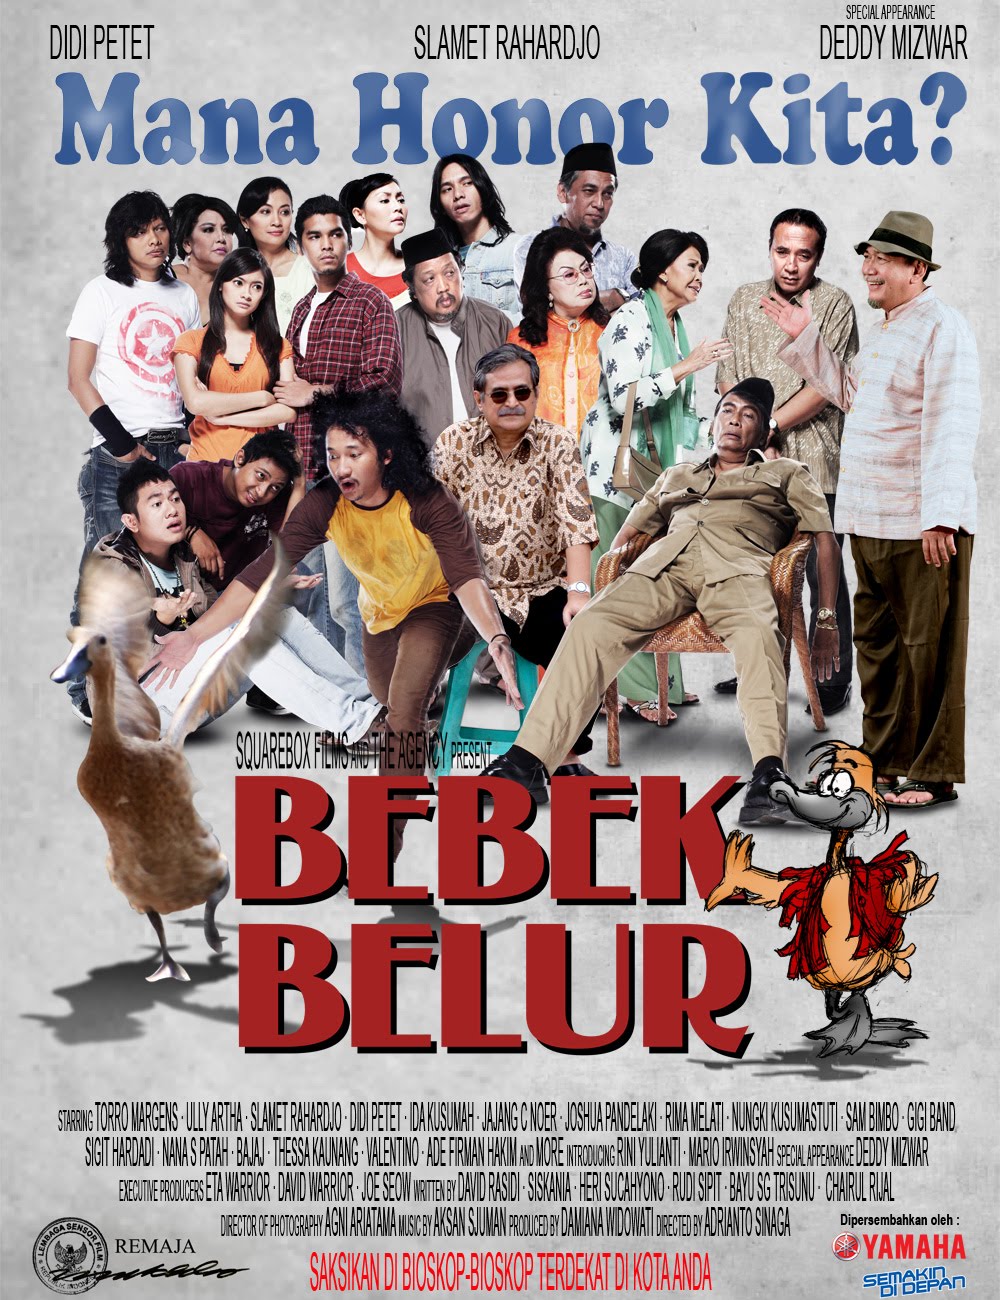 Bebek Belur (2010) DVDrip